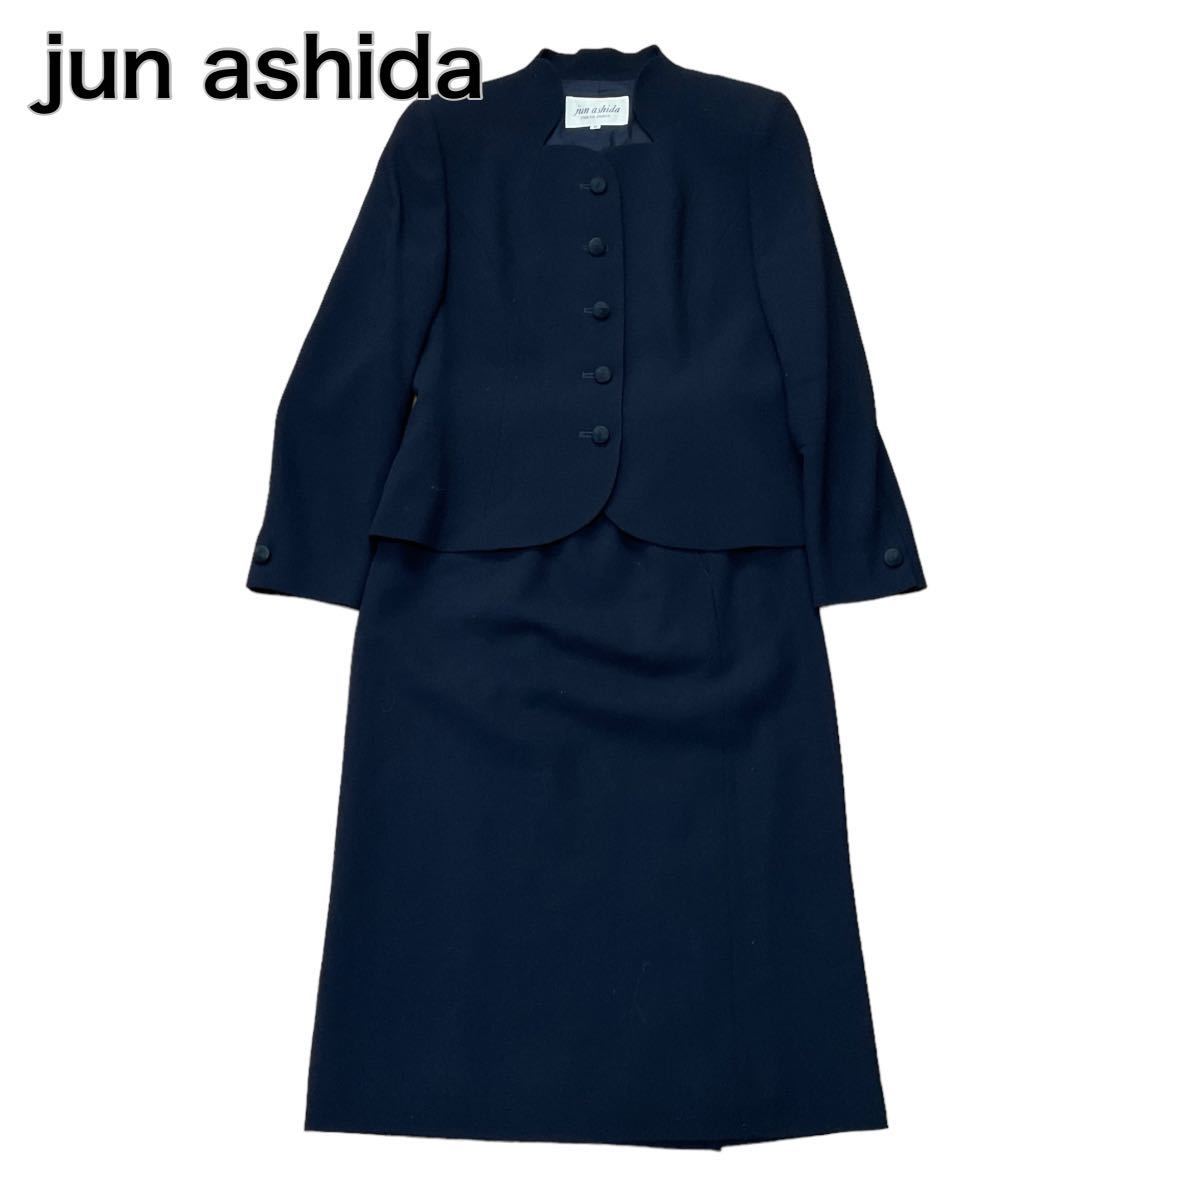 jun ashida ジュンアシダ セットアップ スカート フォーマル ダークネイビー 9号 M_画像1